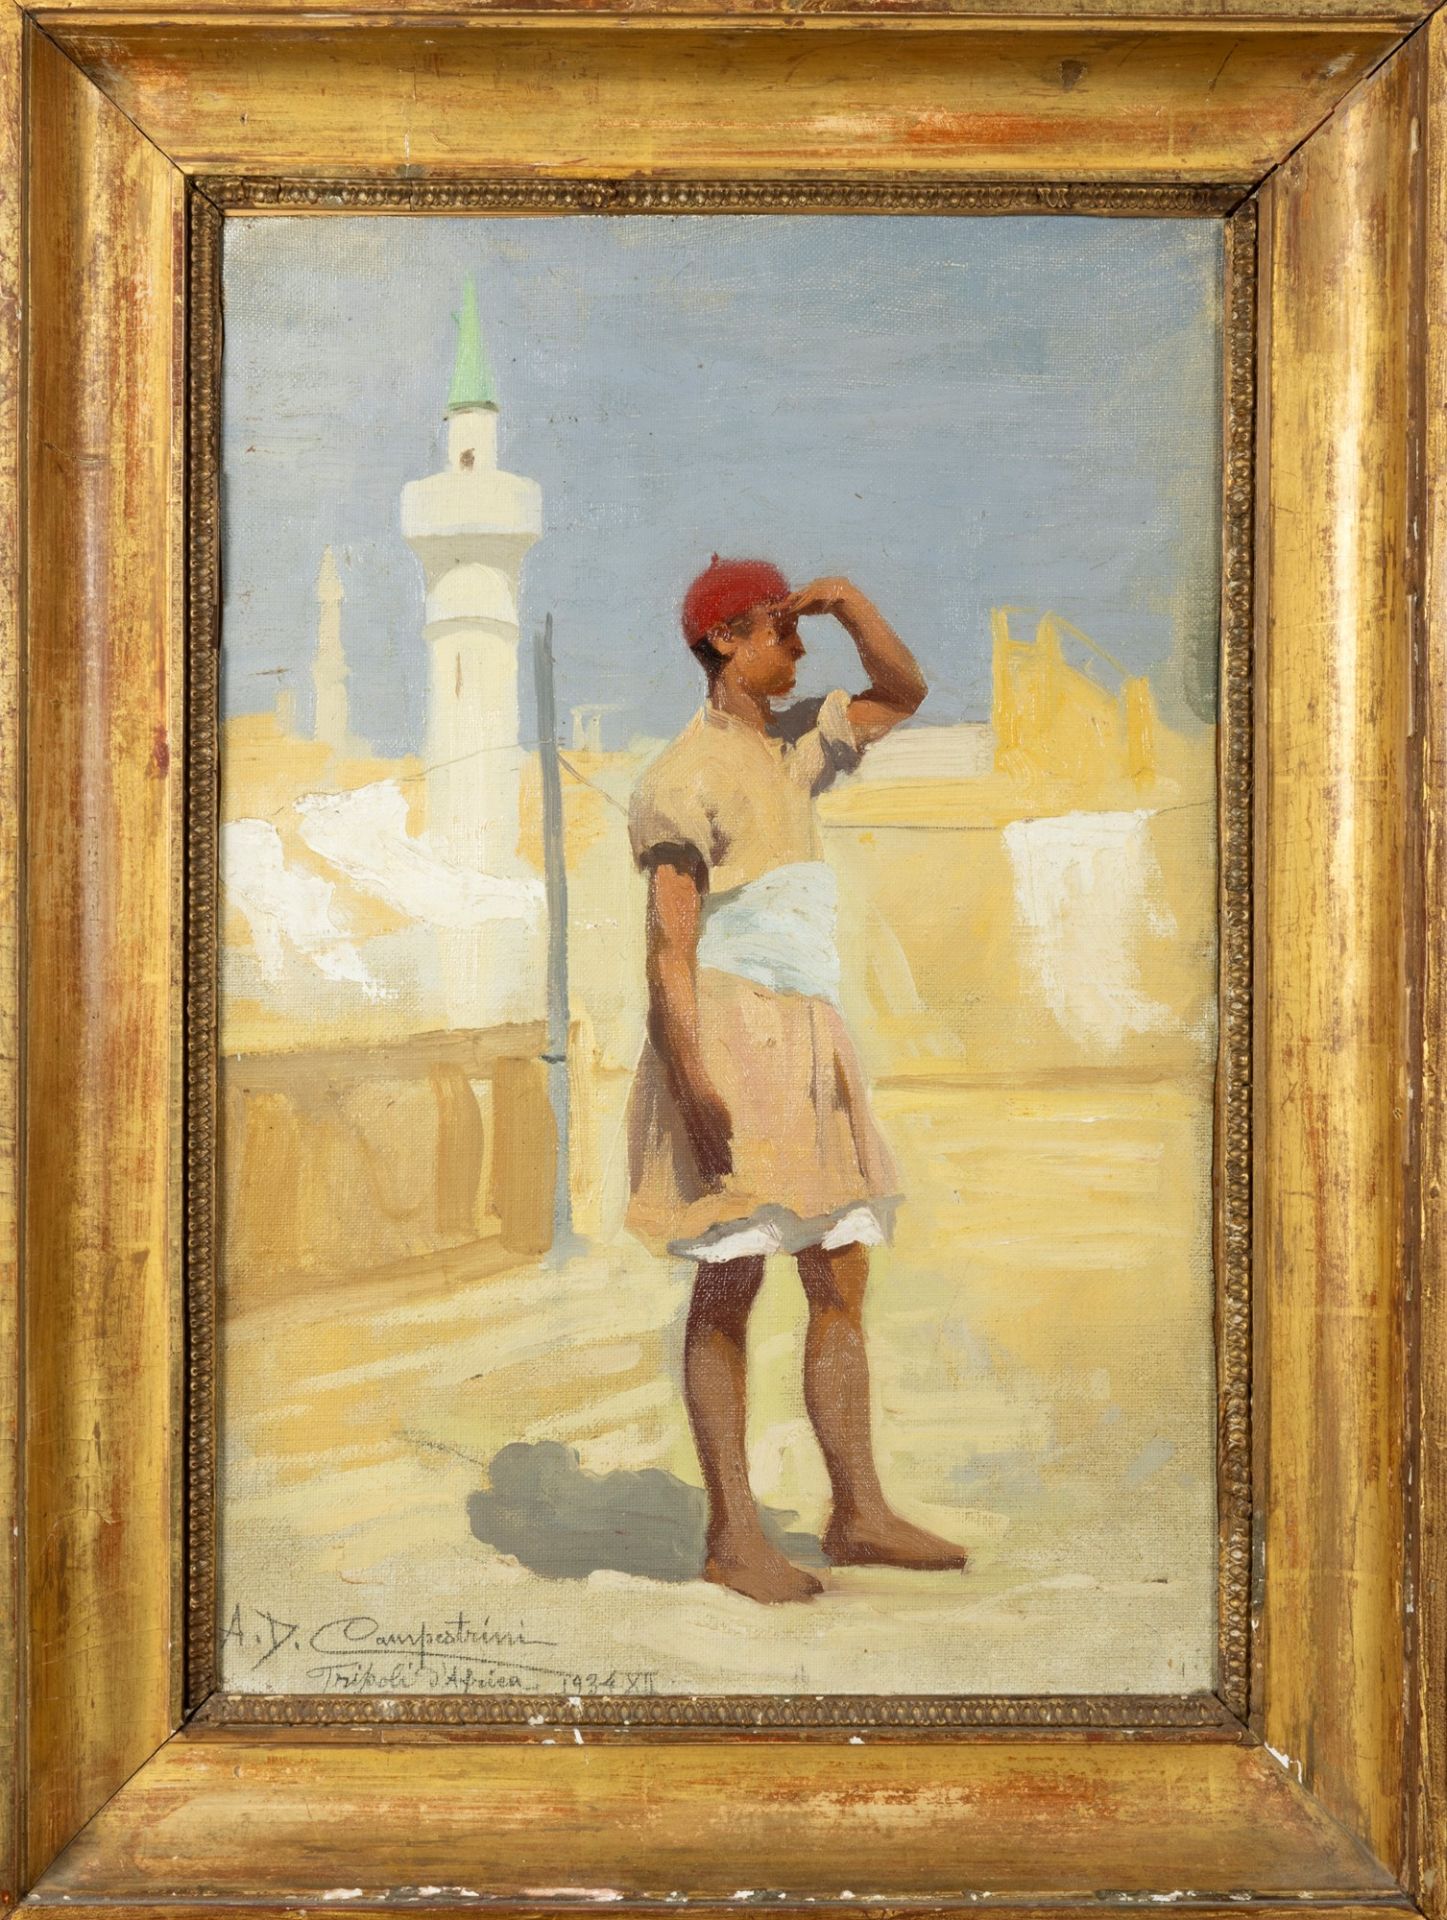 Alcide Davide Campestrini (Trento 1863-Milano 1940) - "Tripoli of Africa", 1934 - Image 2 of 3